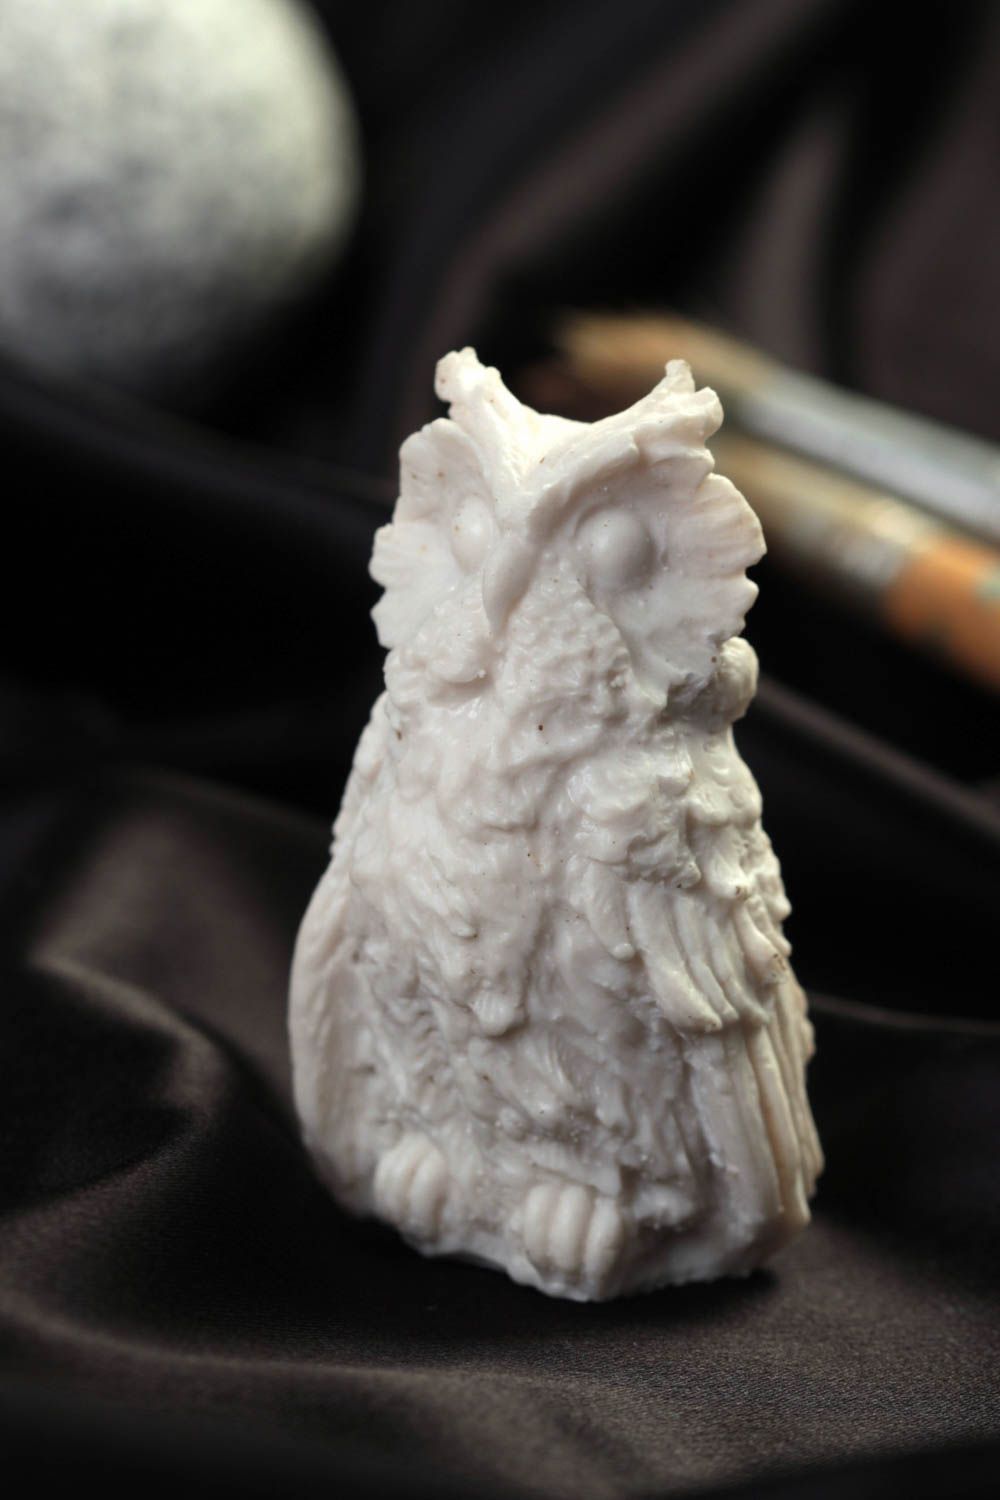 Handmade statuette designer statuette home decor unusual gift owl figurine photo 1